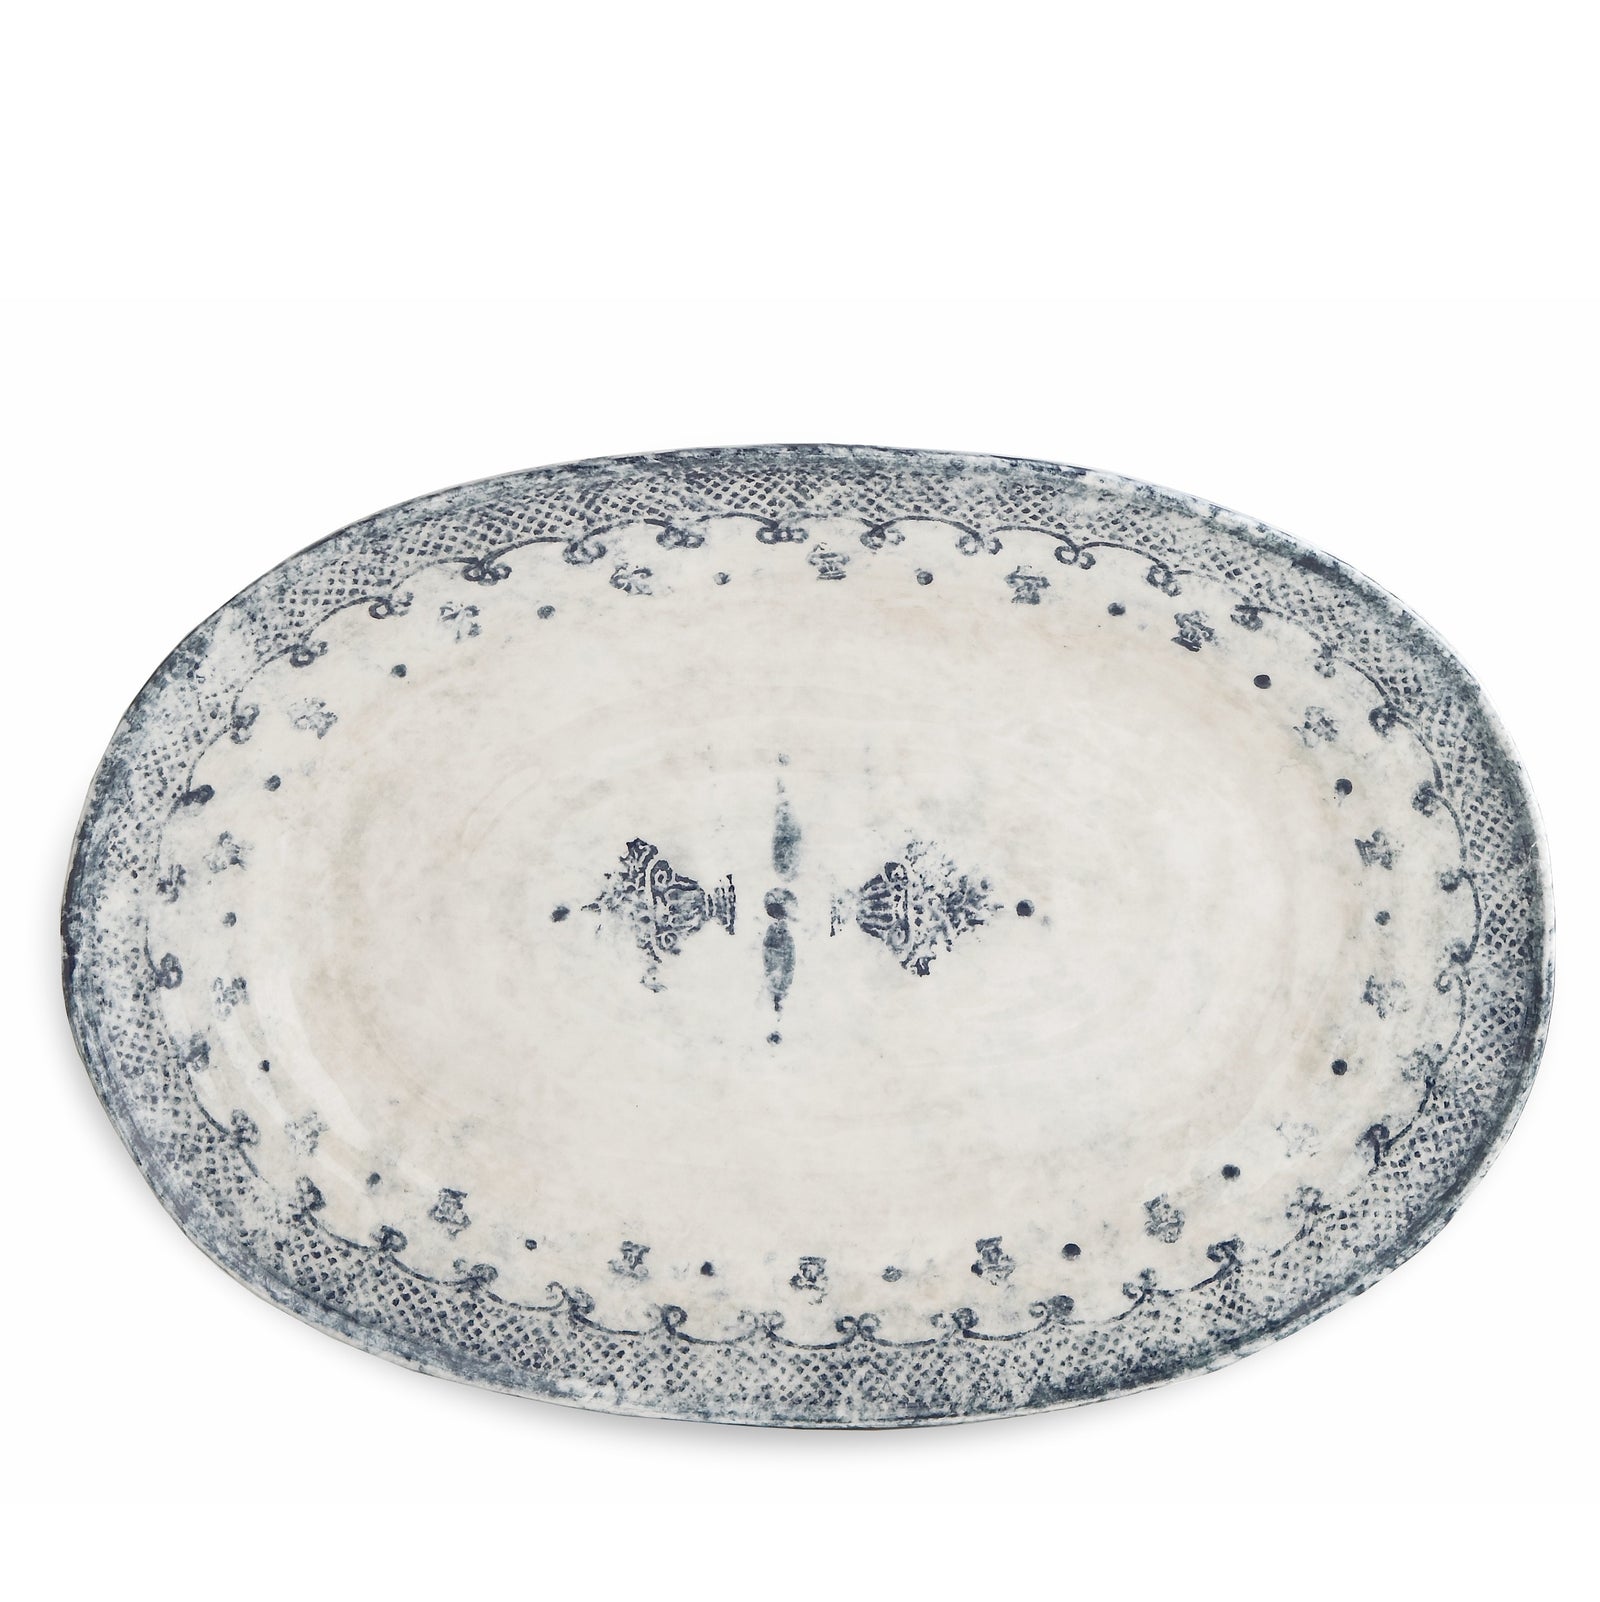 ARTE ITALICA: Burano Large Oval Platter - Artistica.com